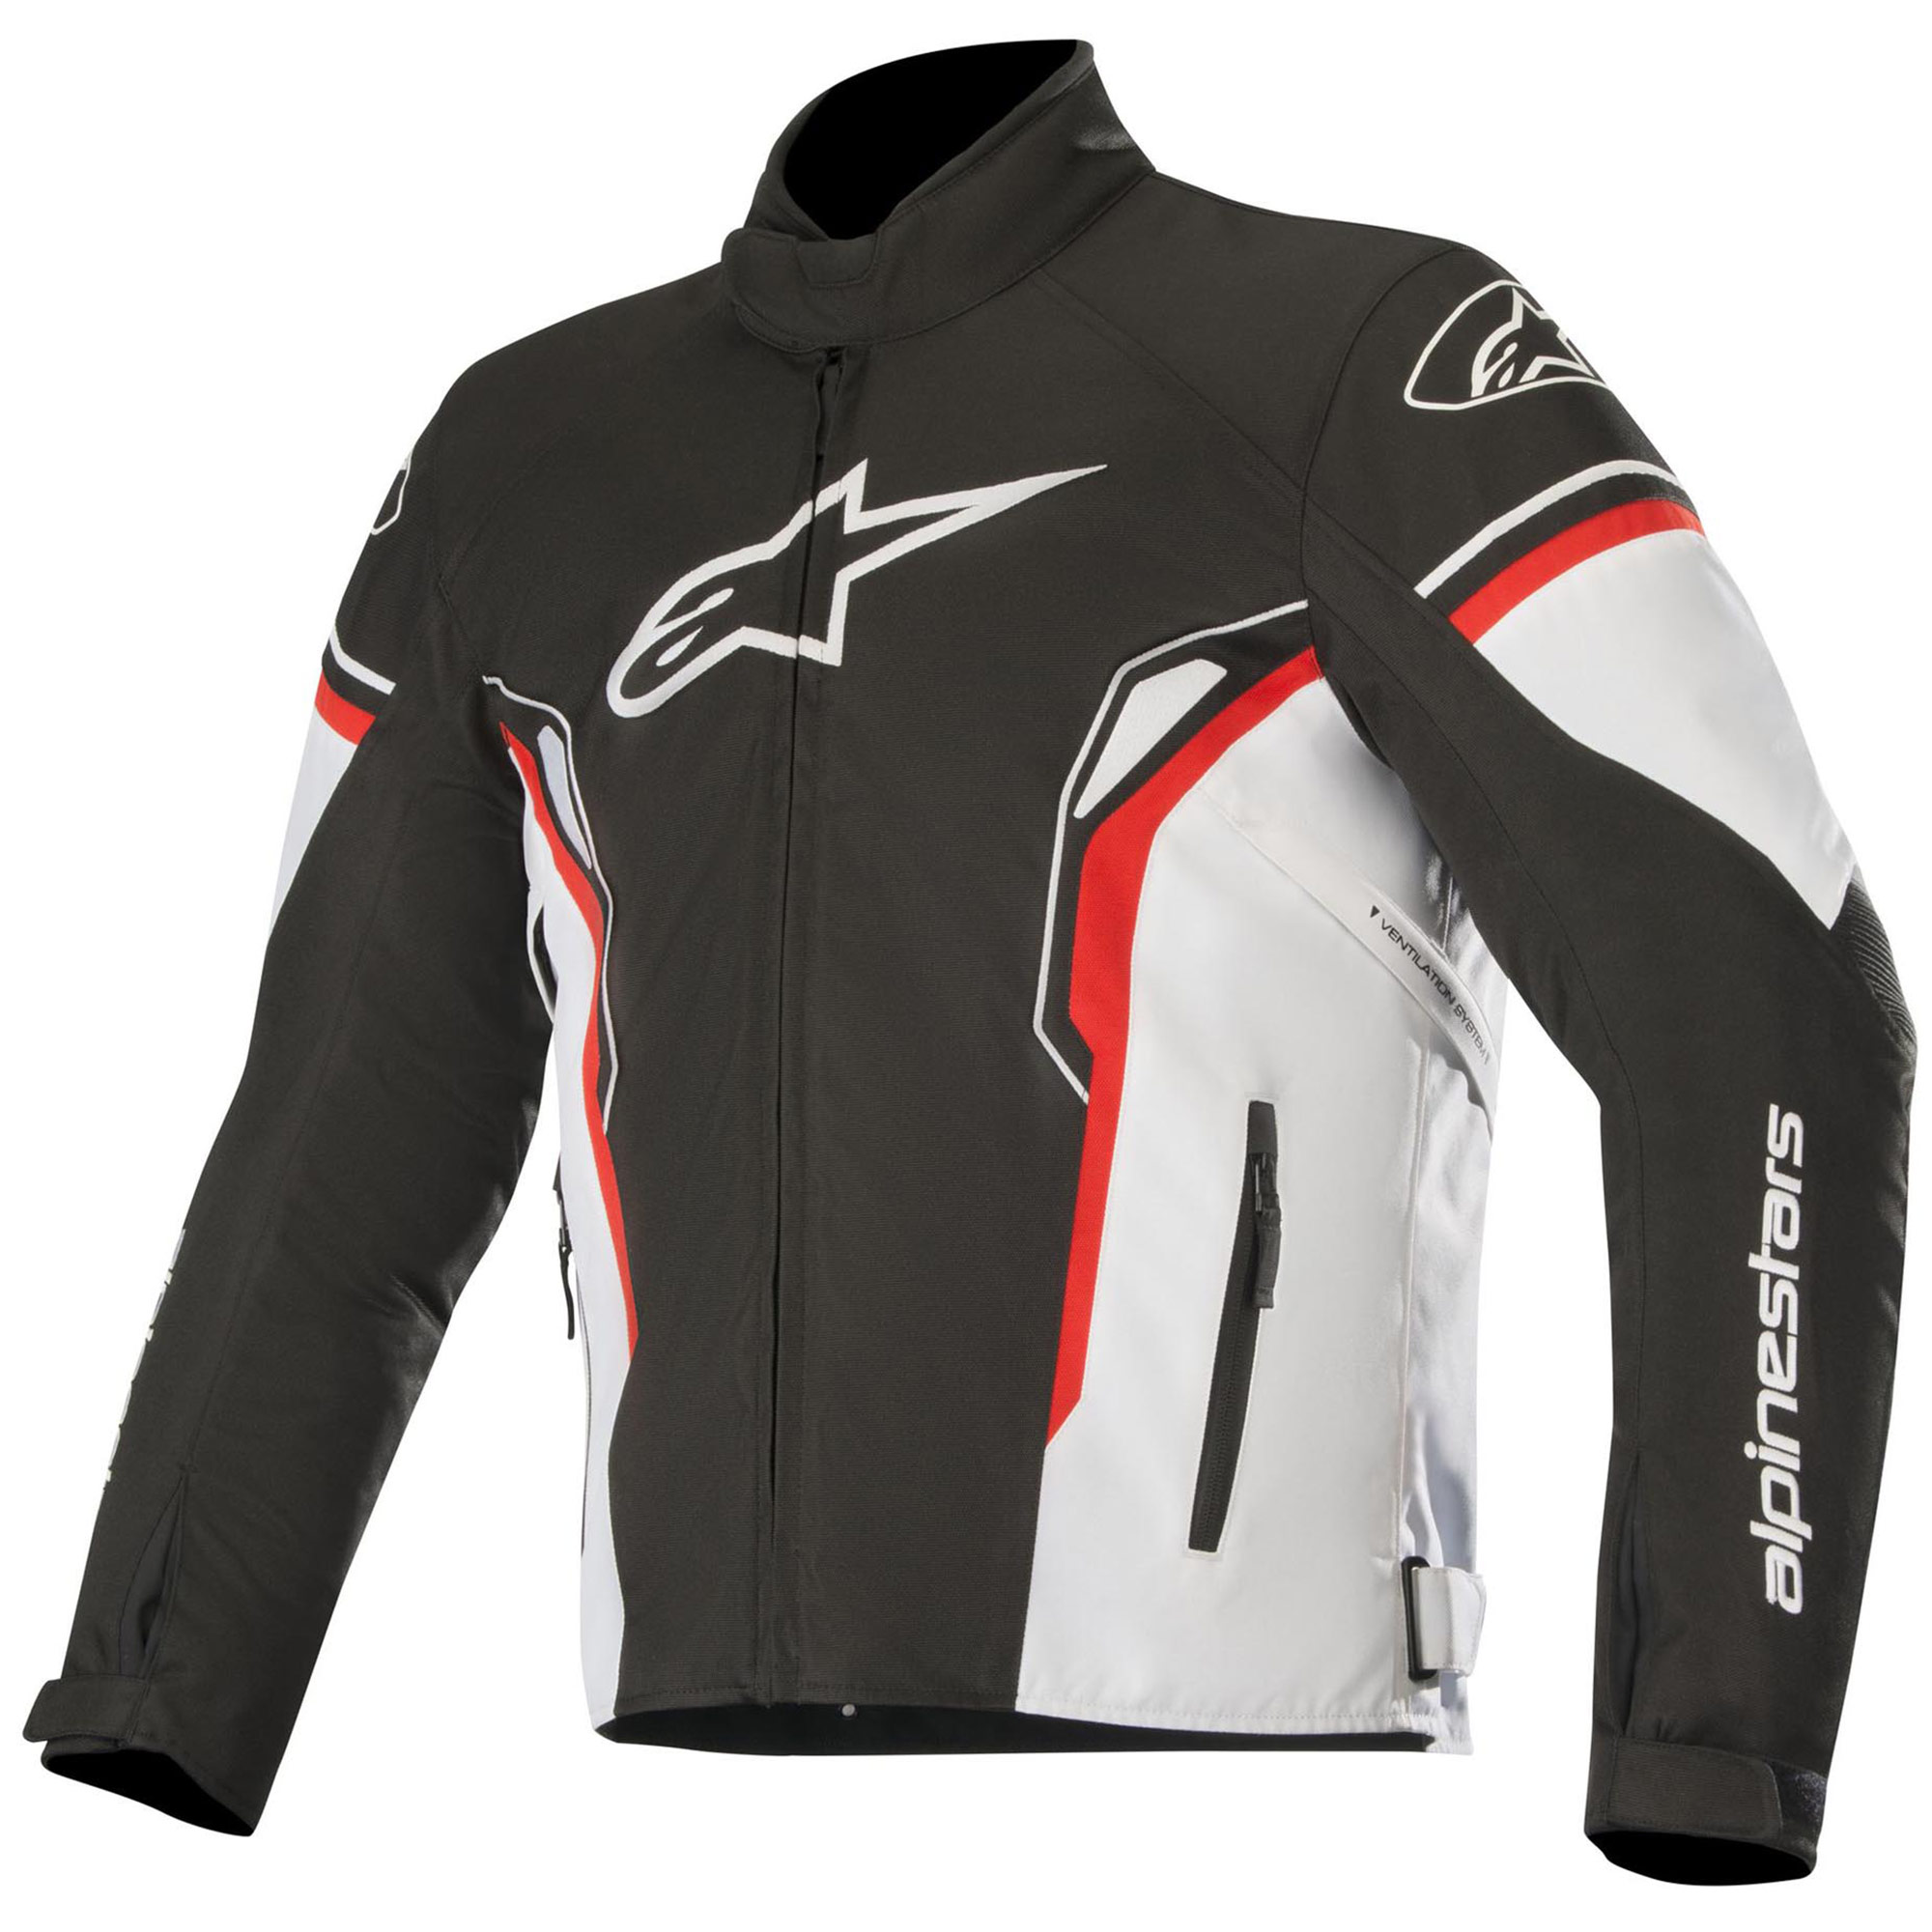 Alpinestars SP Textile Riding Jacket | eBay